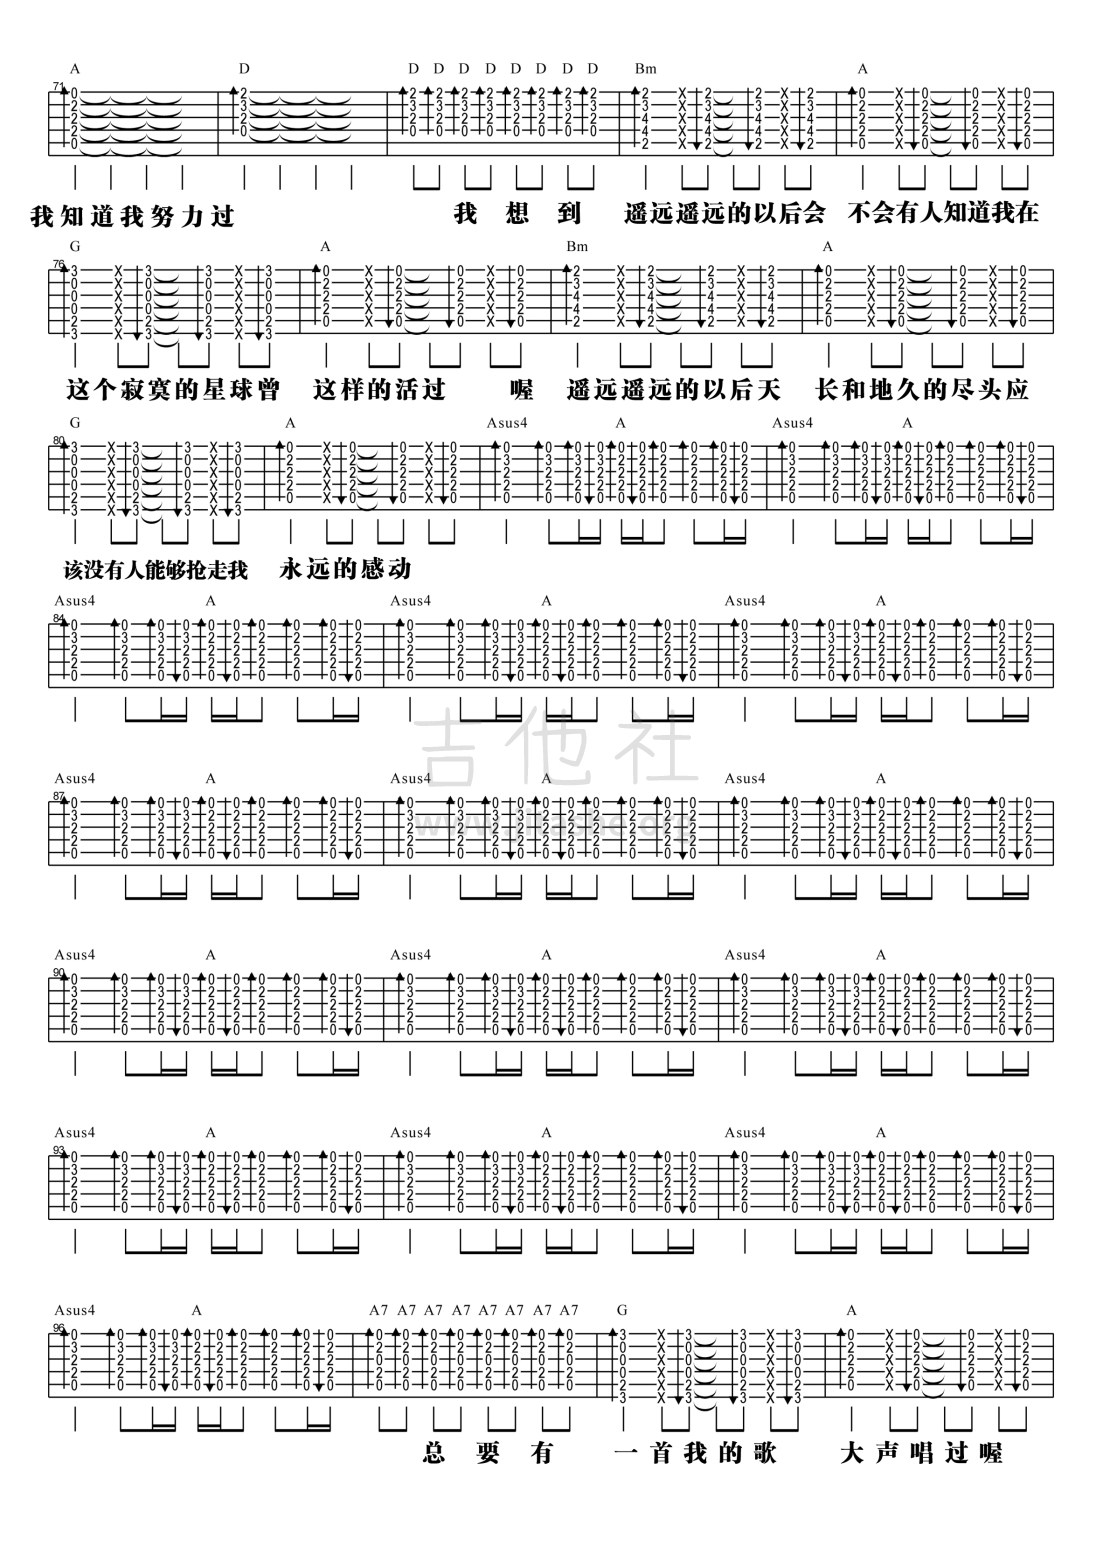 【阿信乐器】#23 五月天《一颗苹果》吉他教学吉他谱(图片谱,弹唱,教学)_五月天(Mayday)_3.jpg